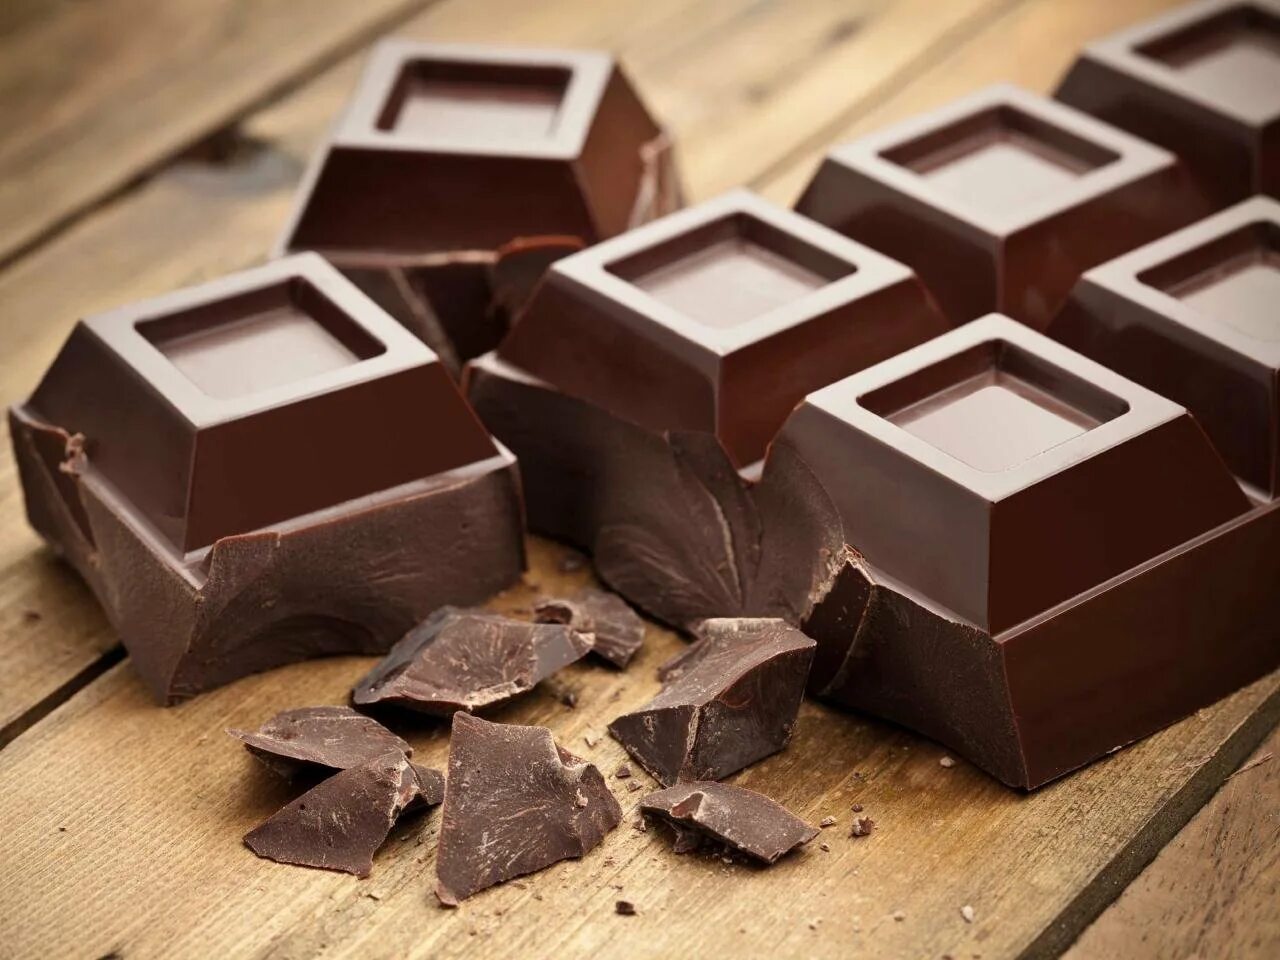 Другой шоколад. Кувертюр (шоколад). Конфеты квадратные шоколадные. Темный шоколад. Конфеты шоколад квадратные.